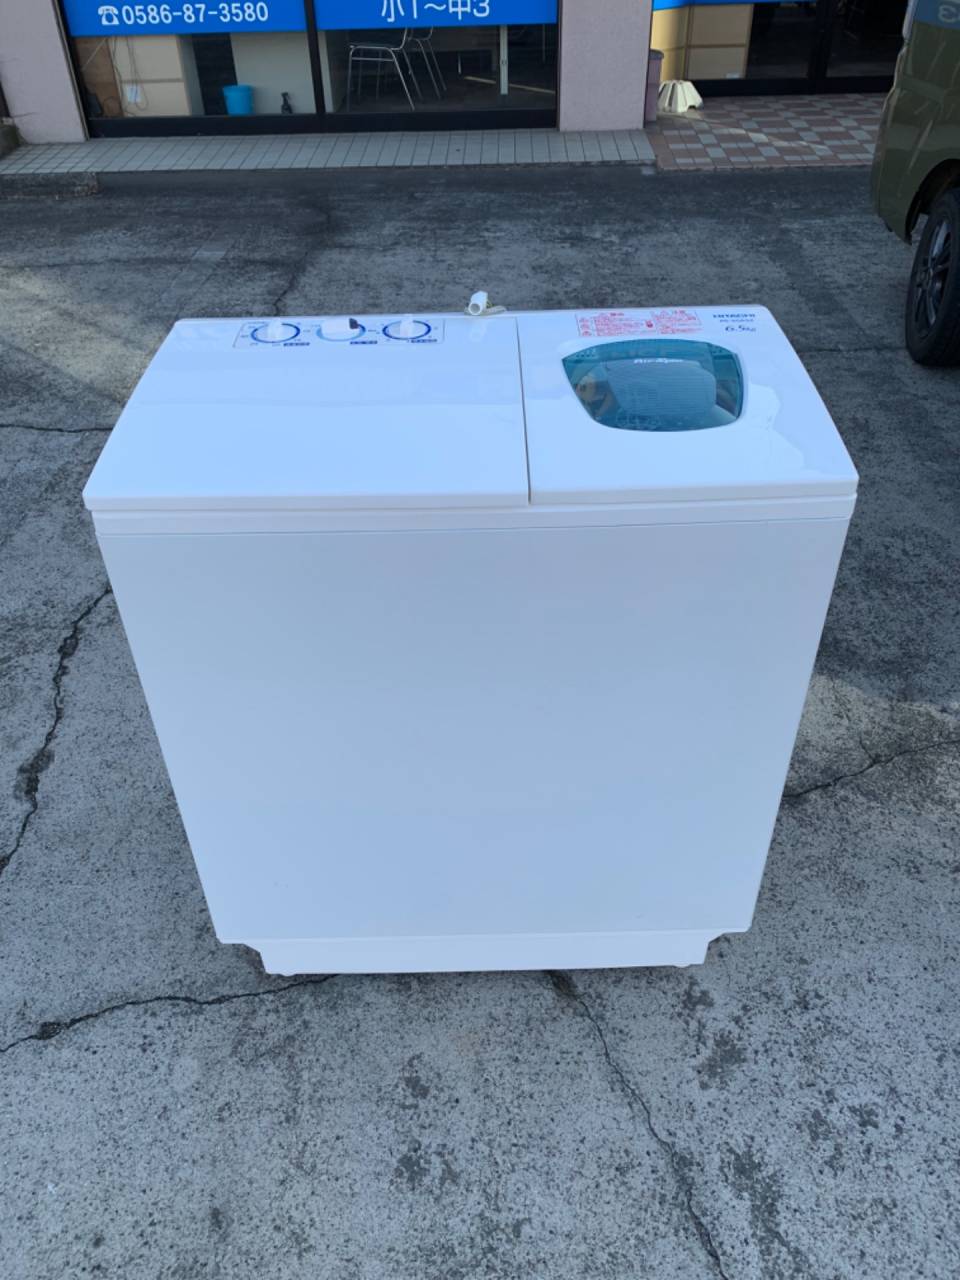 【買取り情報】日立 6.5kg 二槽式洗濯機 青空 PS-65AS2　2018年製を出張買取させていただきました